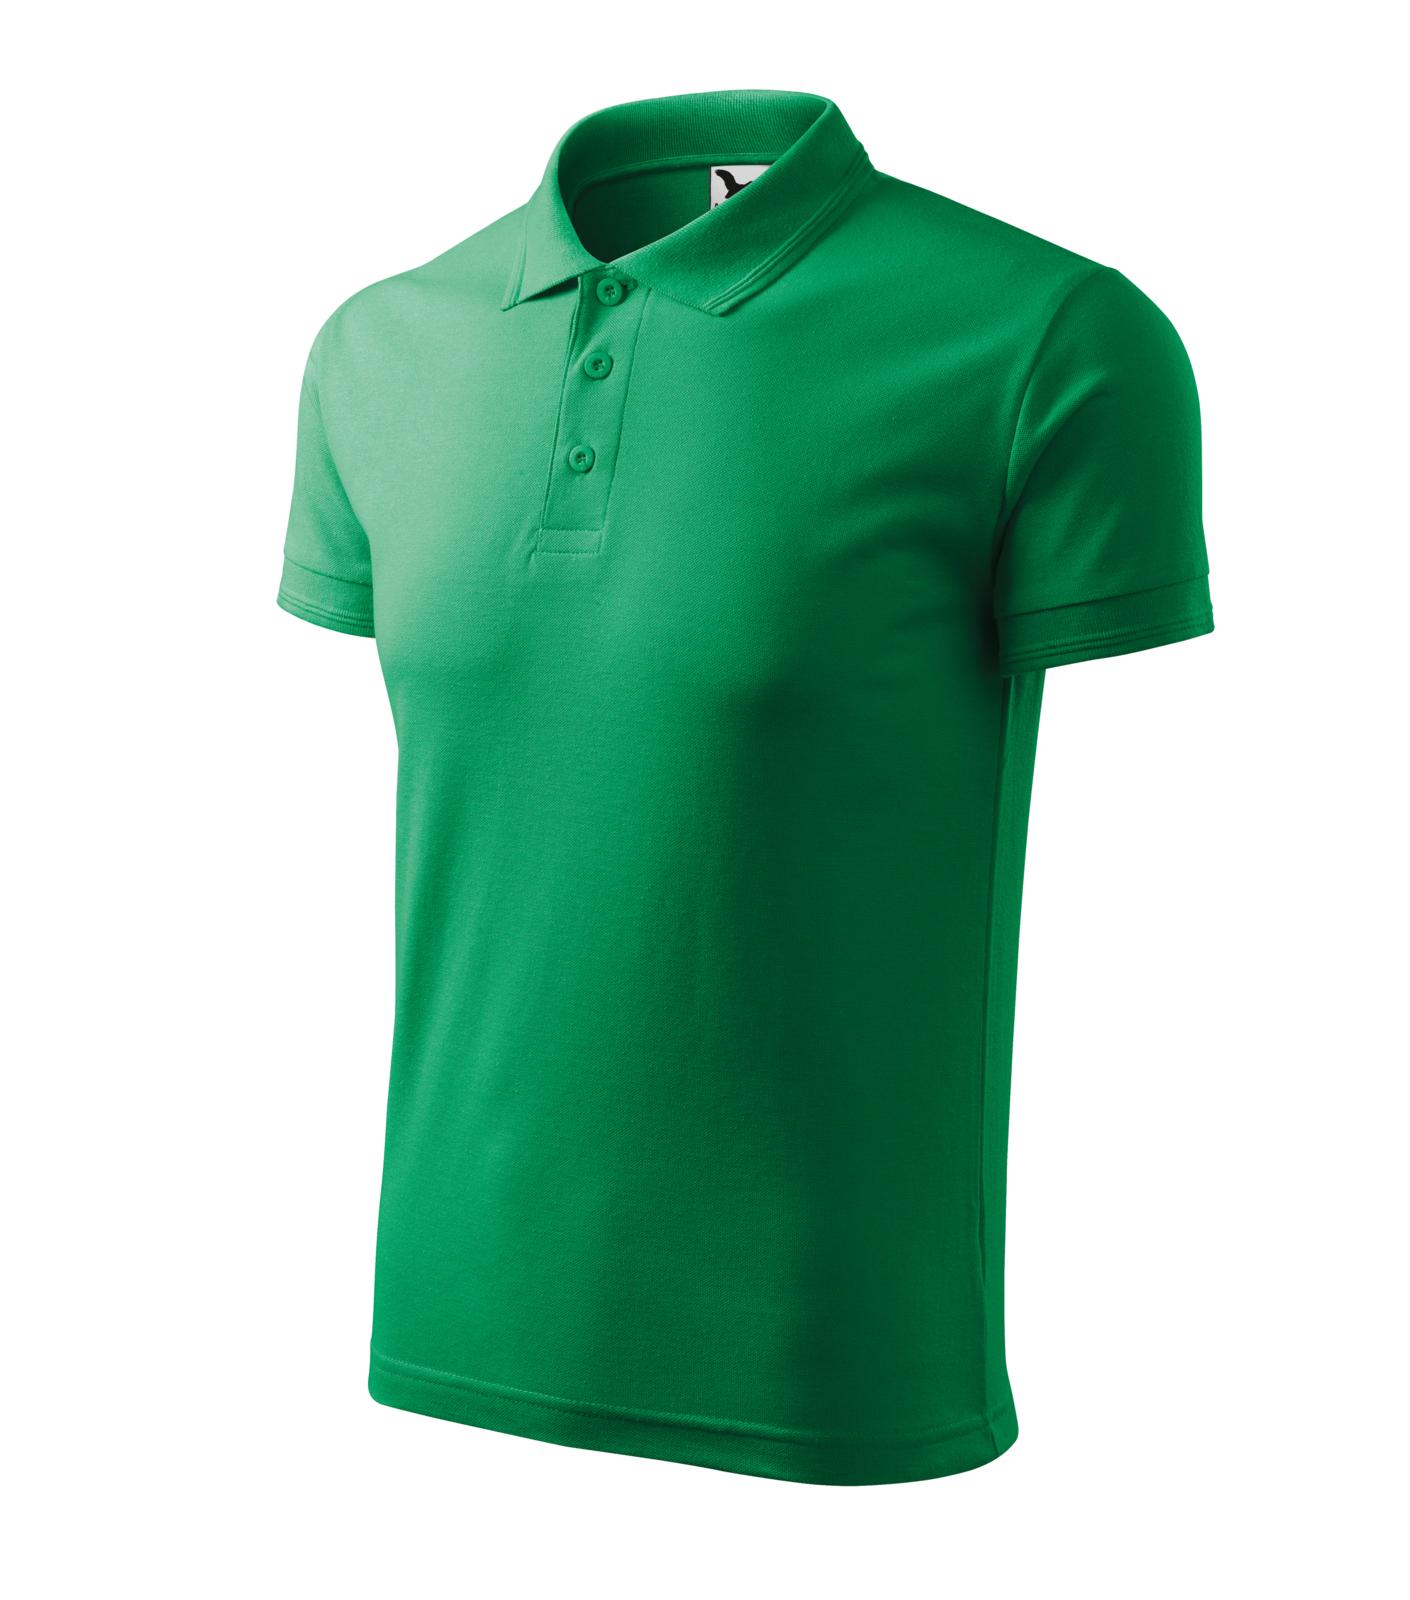 Pique Polo Polokošile pánská Barva: středně zelená, Velikost: S